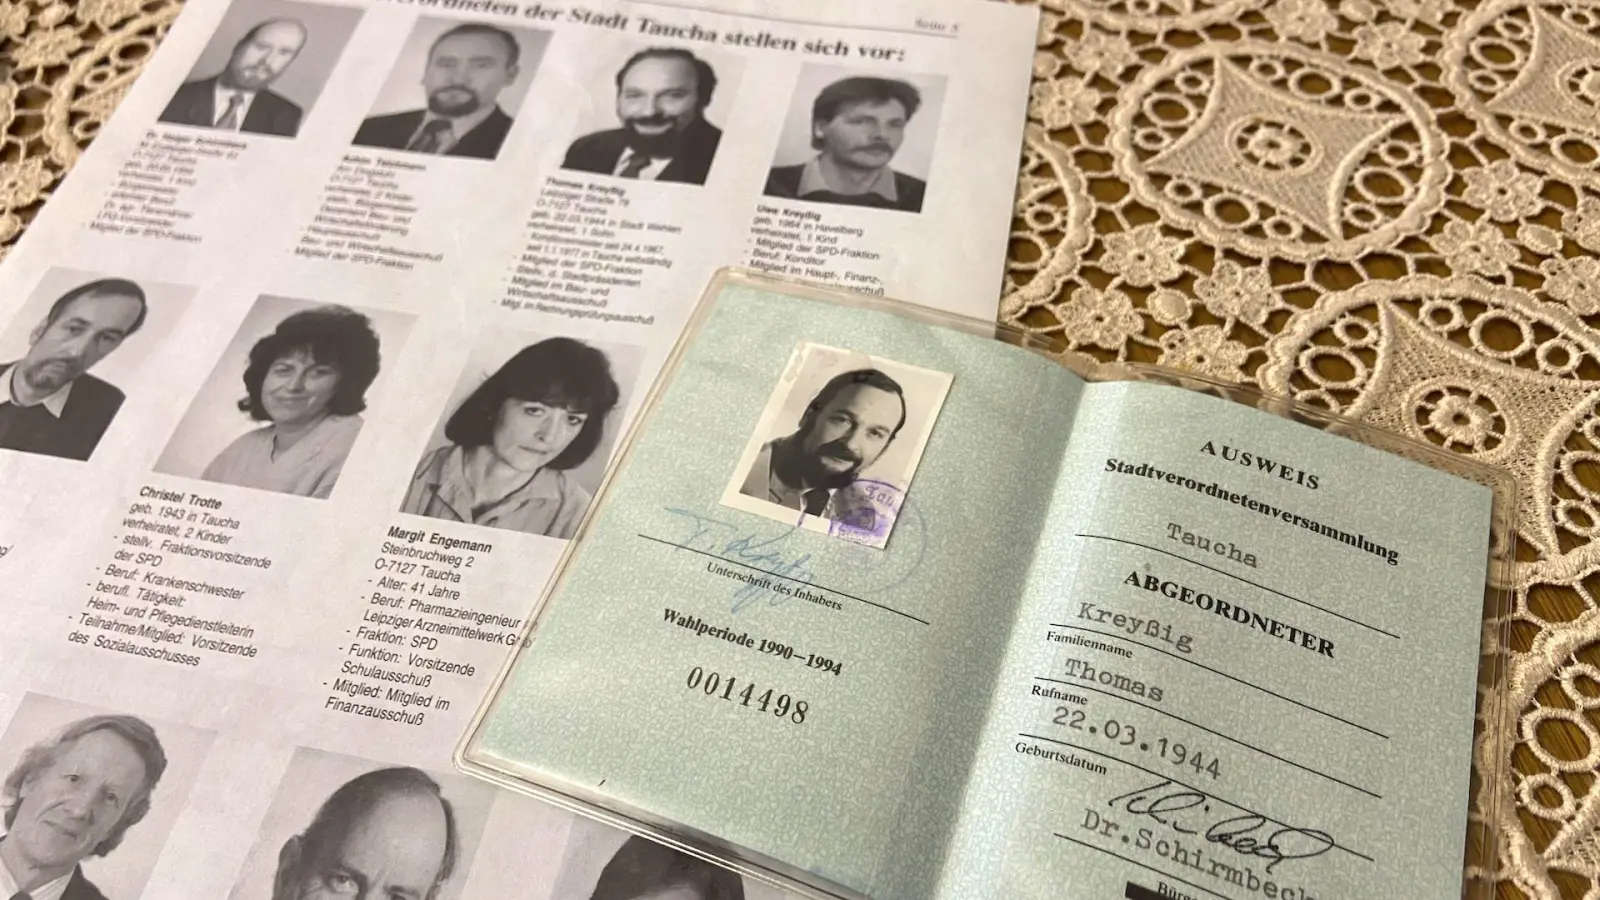 1990 hießen die Stadträte noch Stadtverordnete. Seinen Ausweis von damals hat Thomas Kreyßig noch. (Foto: taucha-kompakt.de)